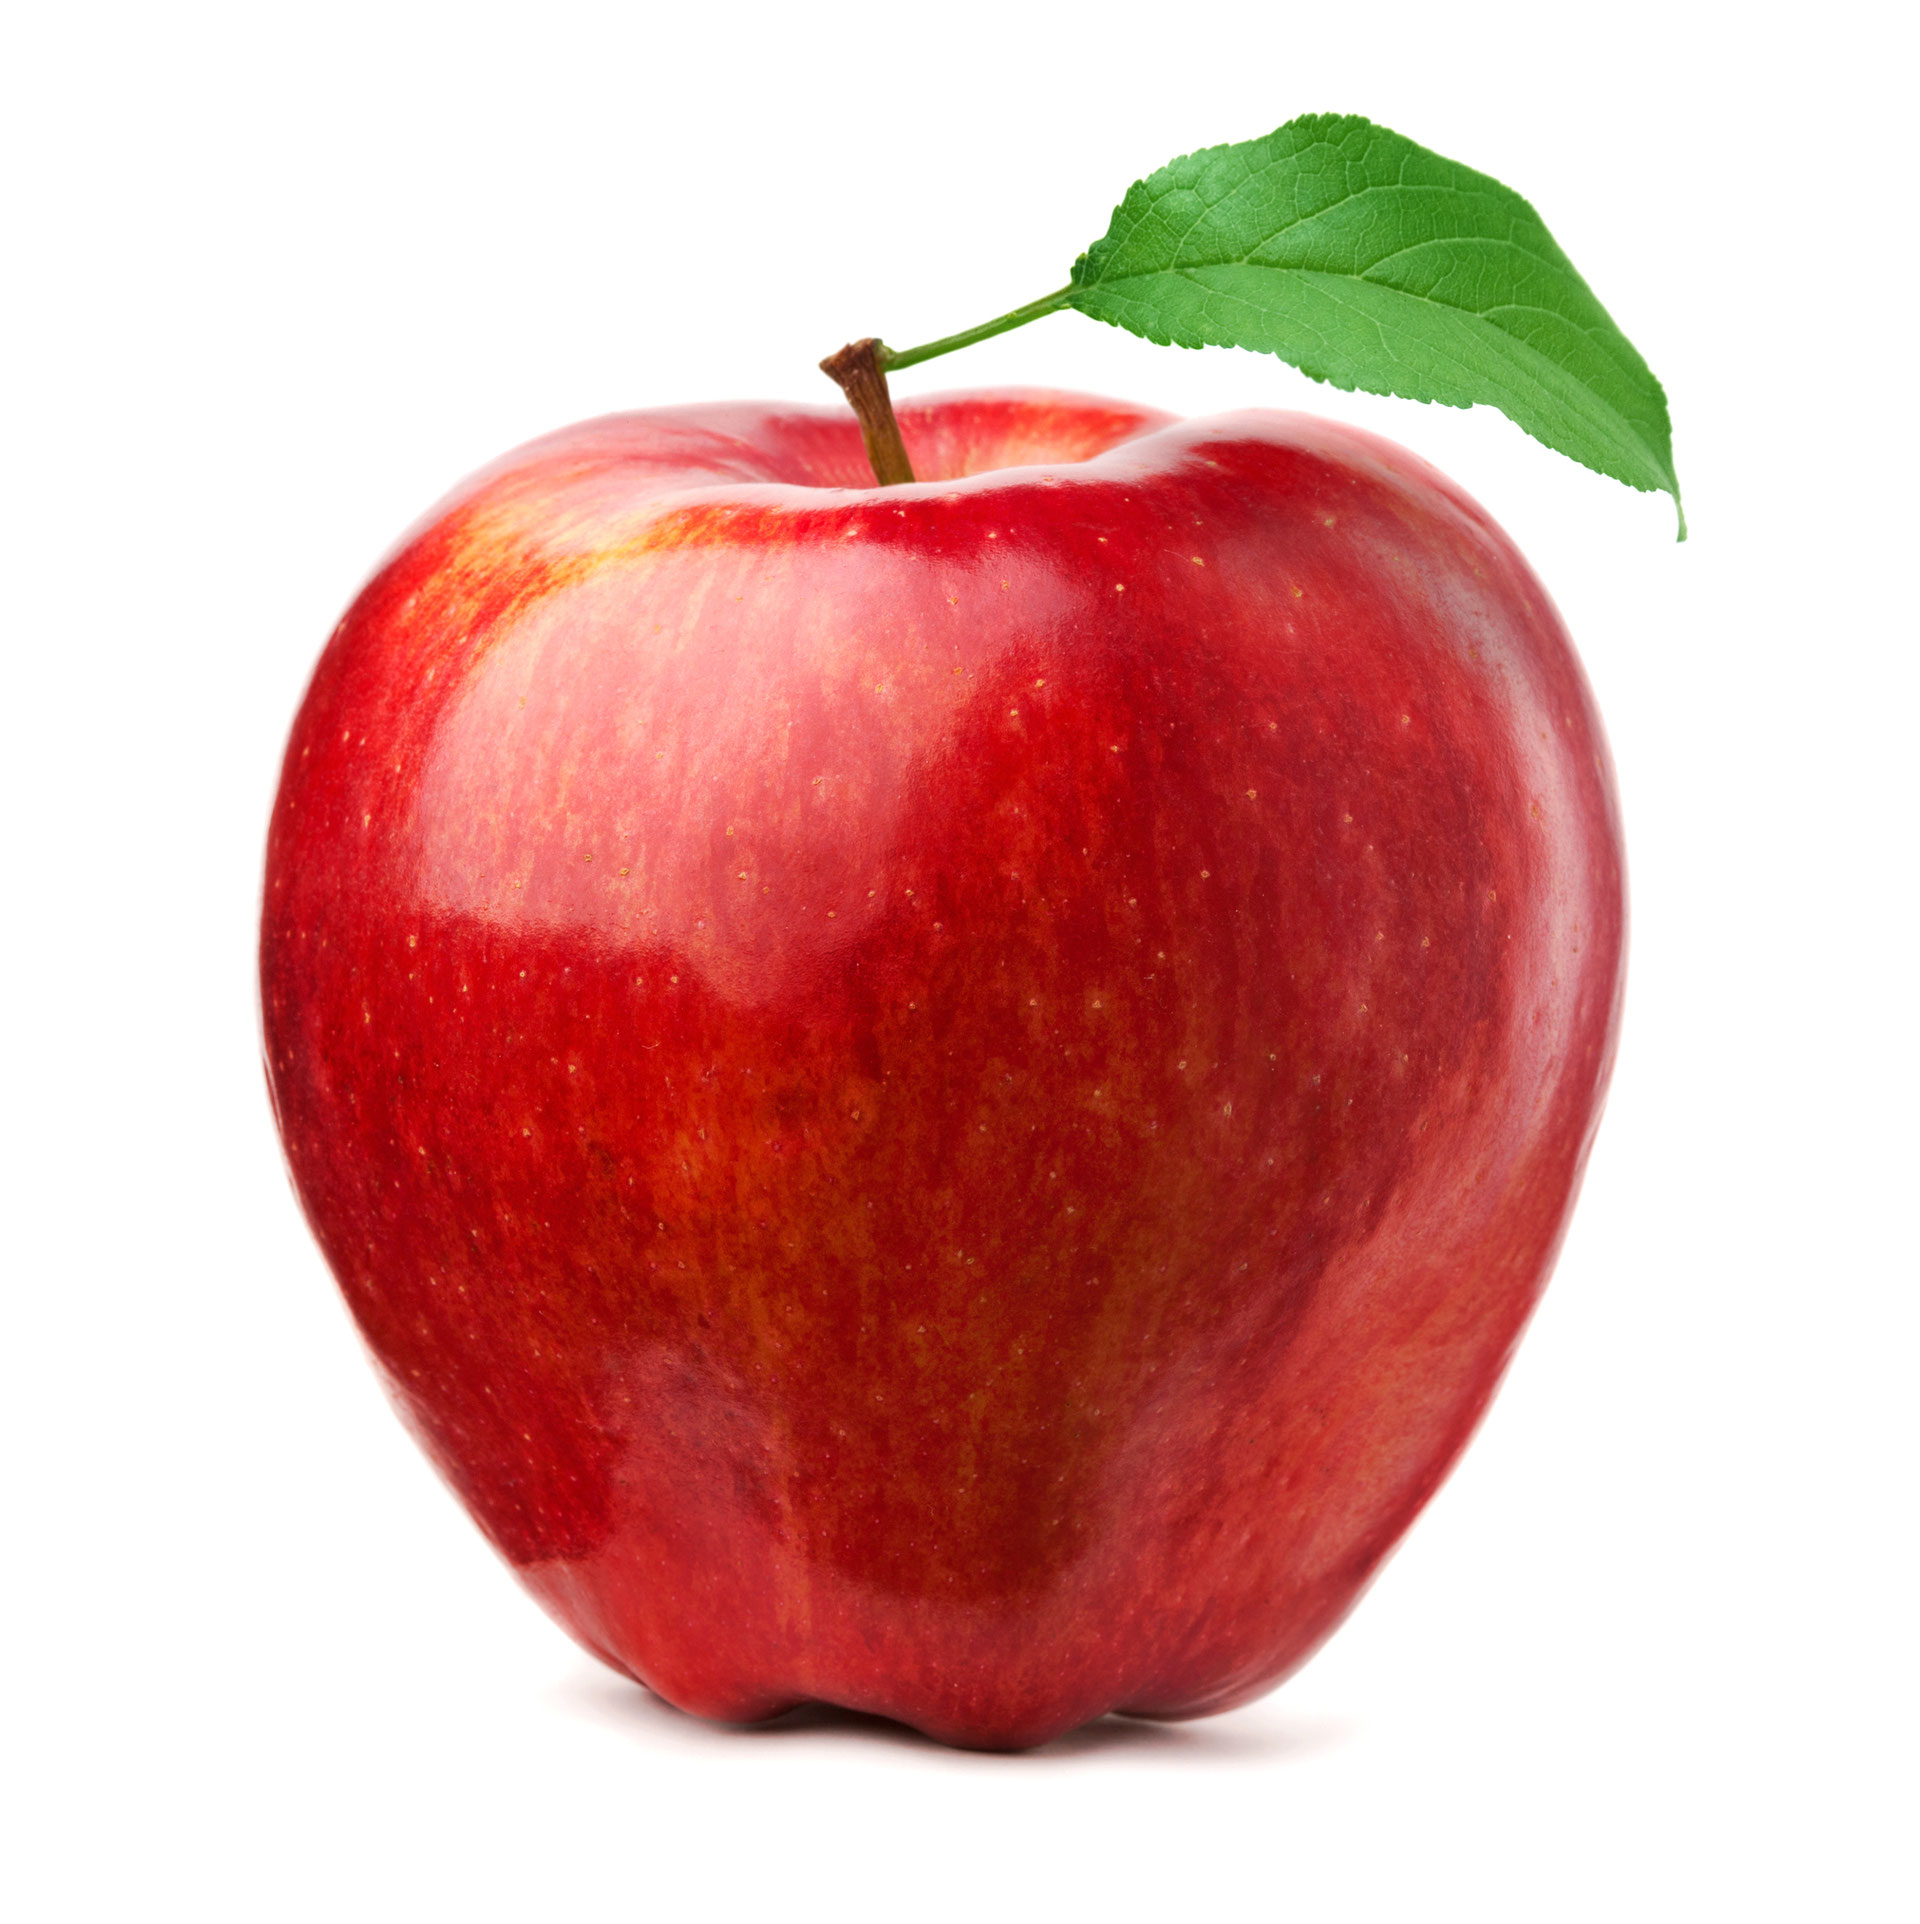 Die Superfrucht Apfel: Lecker und best and recipes - Vielseitig food, // of travel